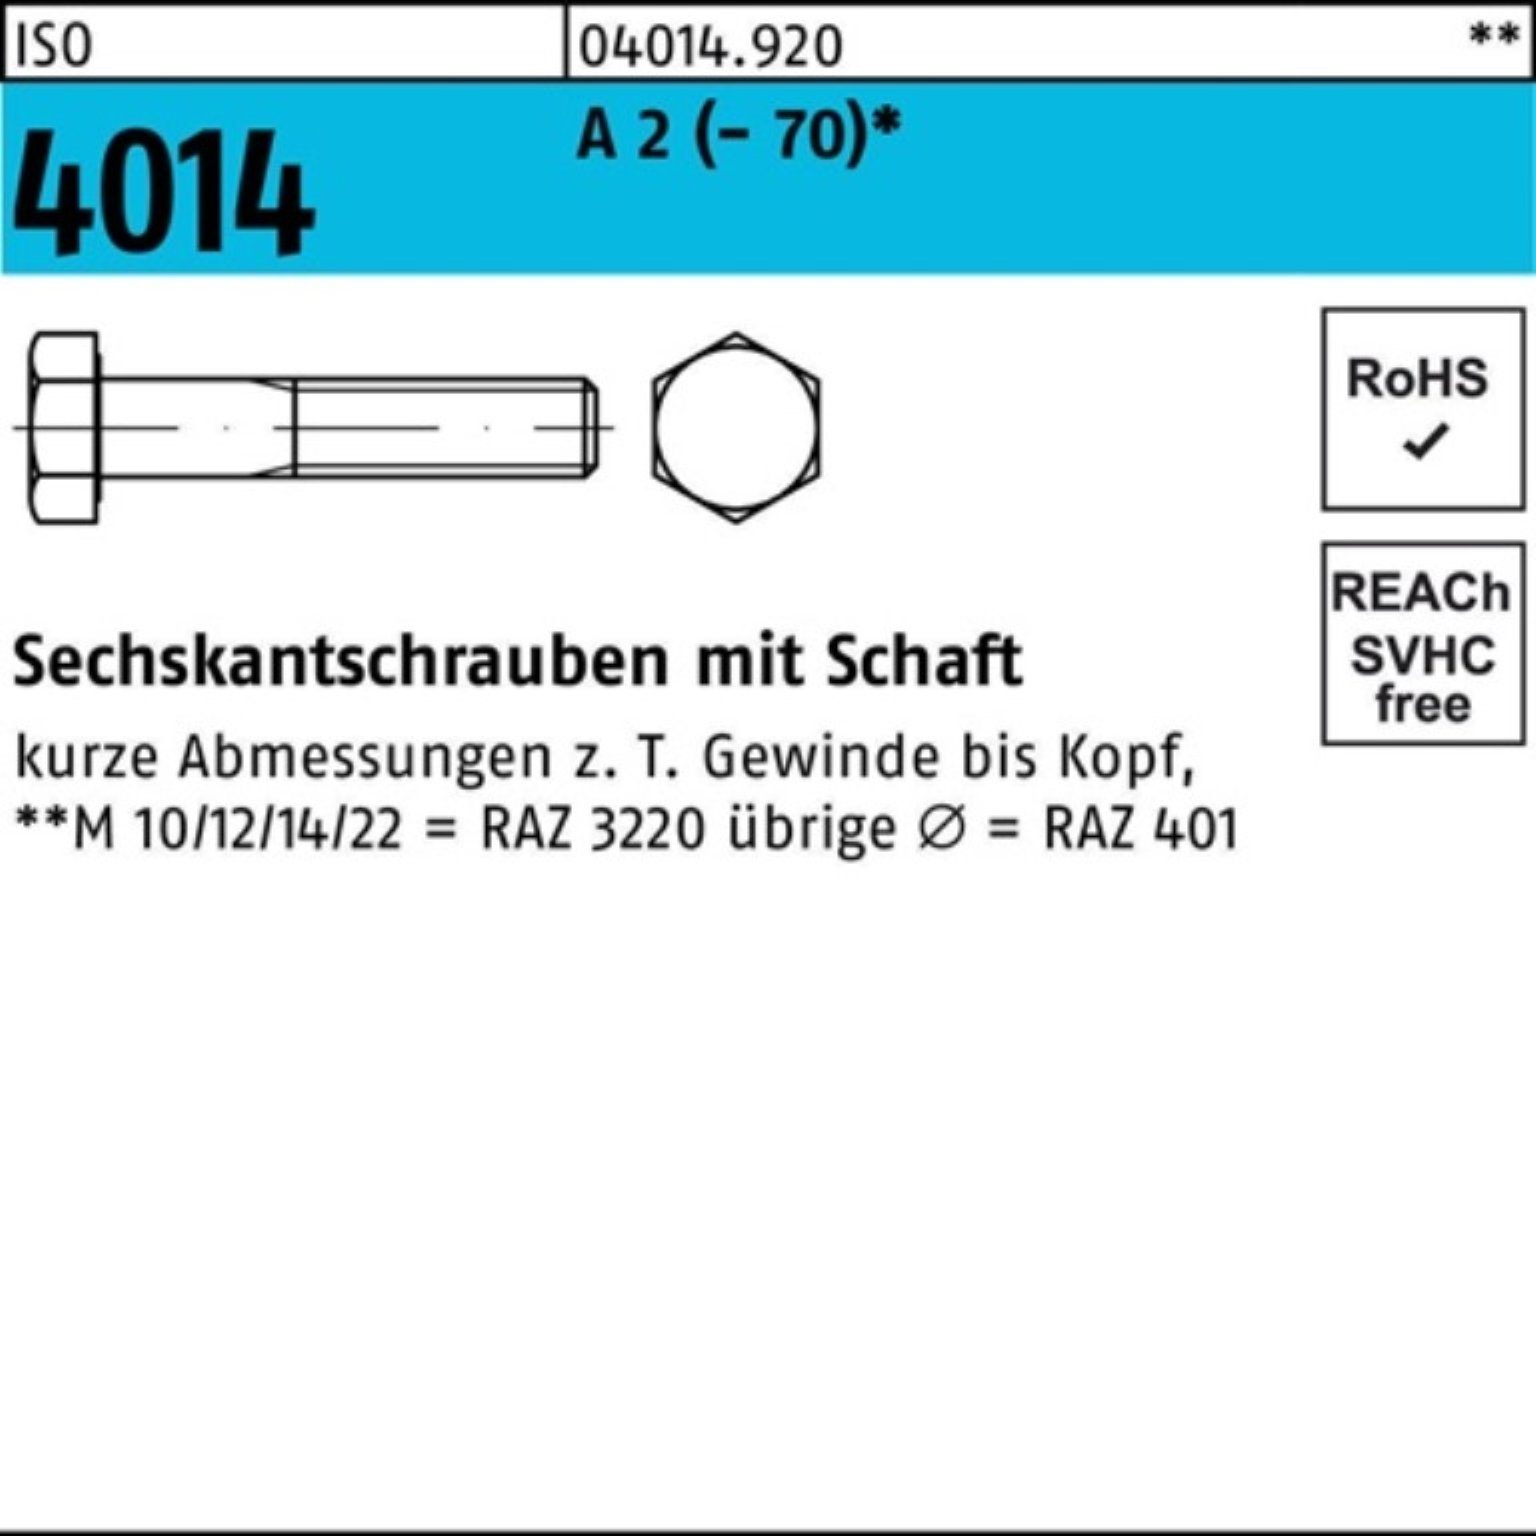 ISO Schaft A 2 1 4014 Pack 100er Bufab 65 Stü Sechskantschraube M20x Sechskantschraube (70)